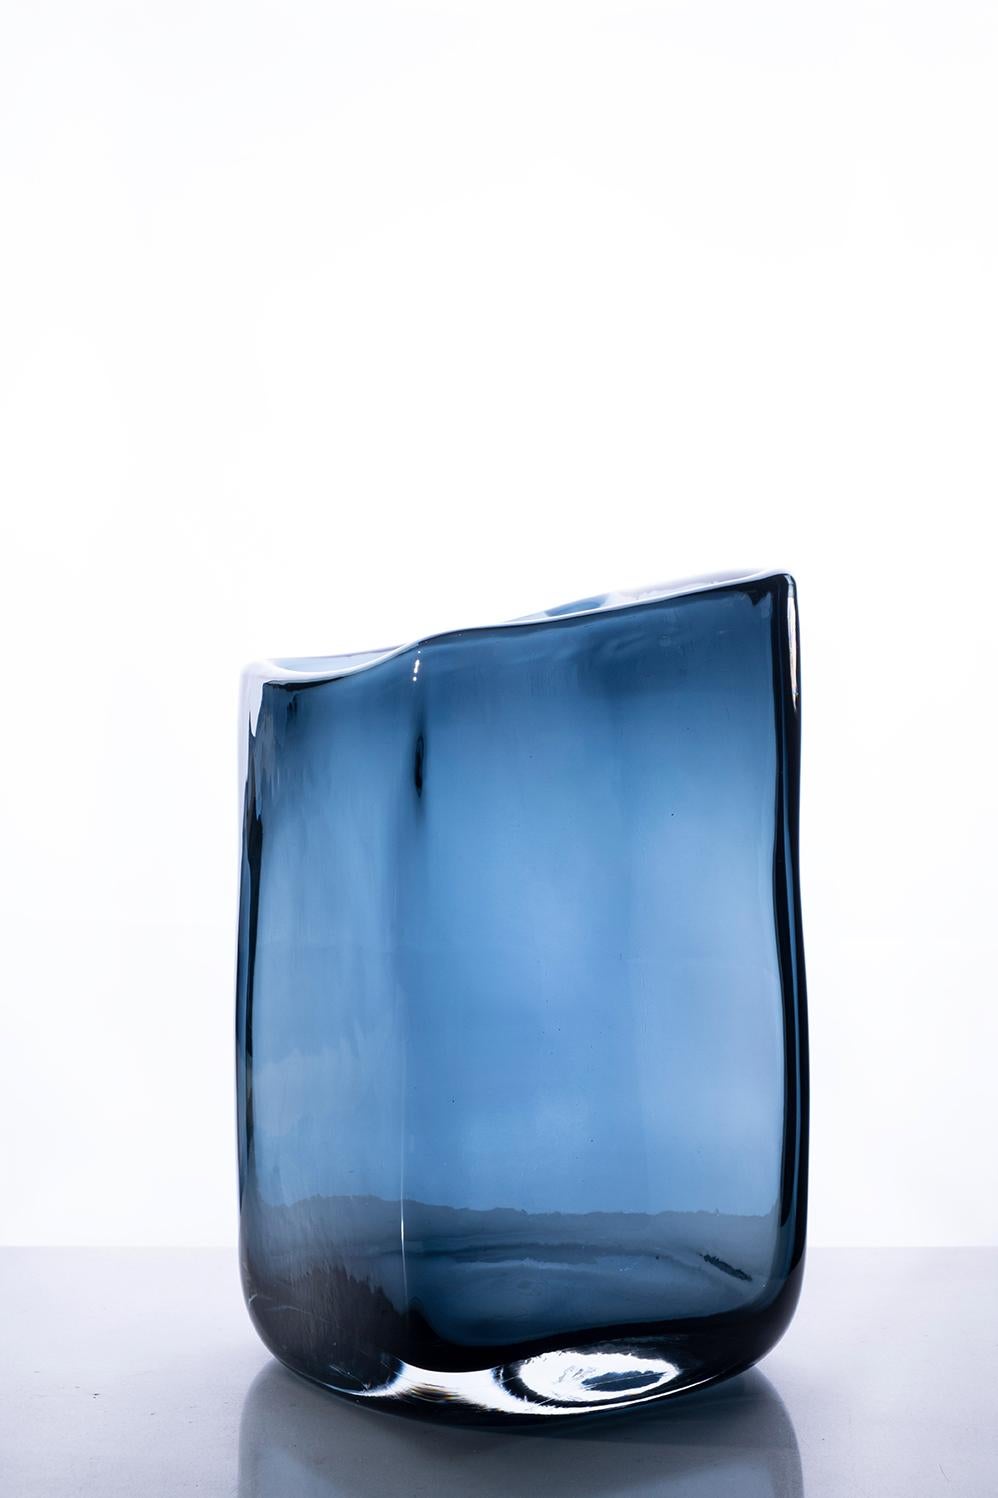 Kleine Vase Trapezio, Muranoglas, von Federico Peri, 21. Jahrhundert.
Trapezio ist eine Vase aus der Kollektion Essentials, die von Federico Peri für Purho im Frühjahr 2021 entworfen wurde.
Trapezio entsteht aus einem ovalen und konischen